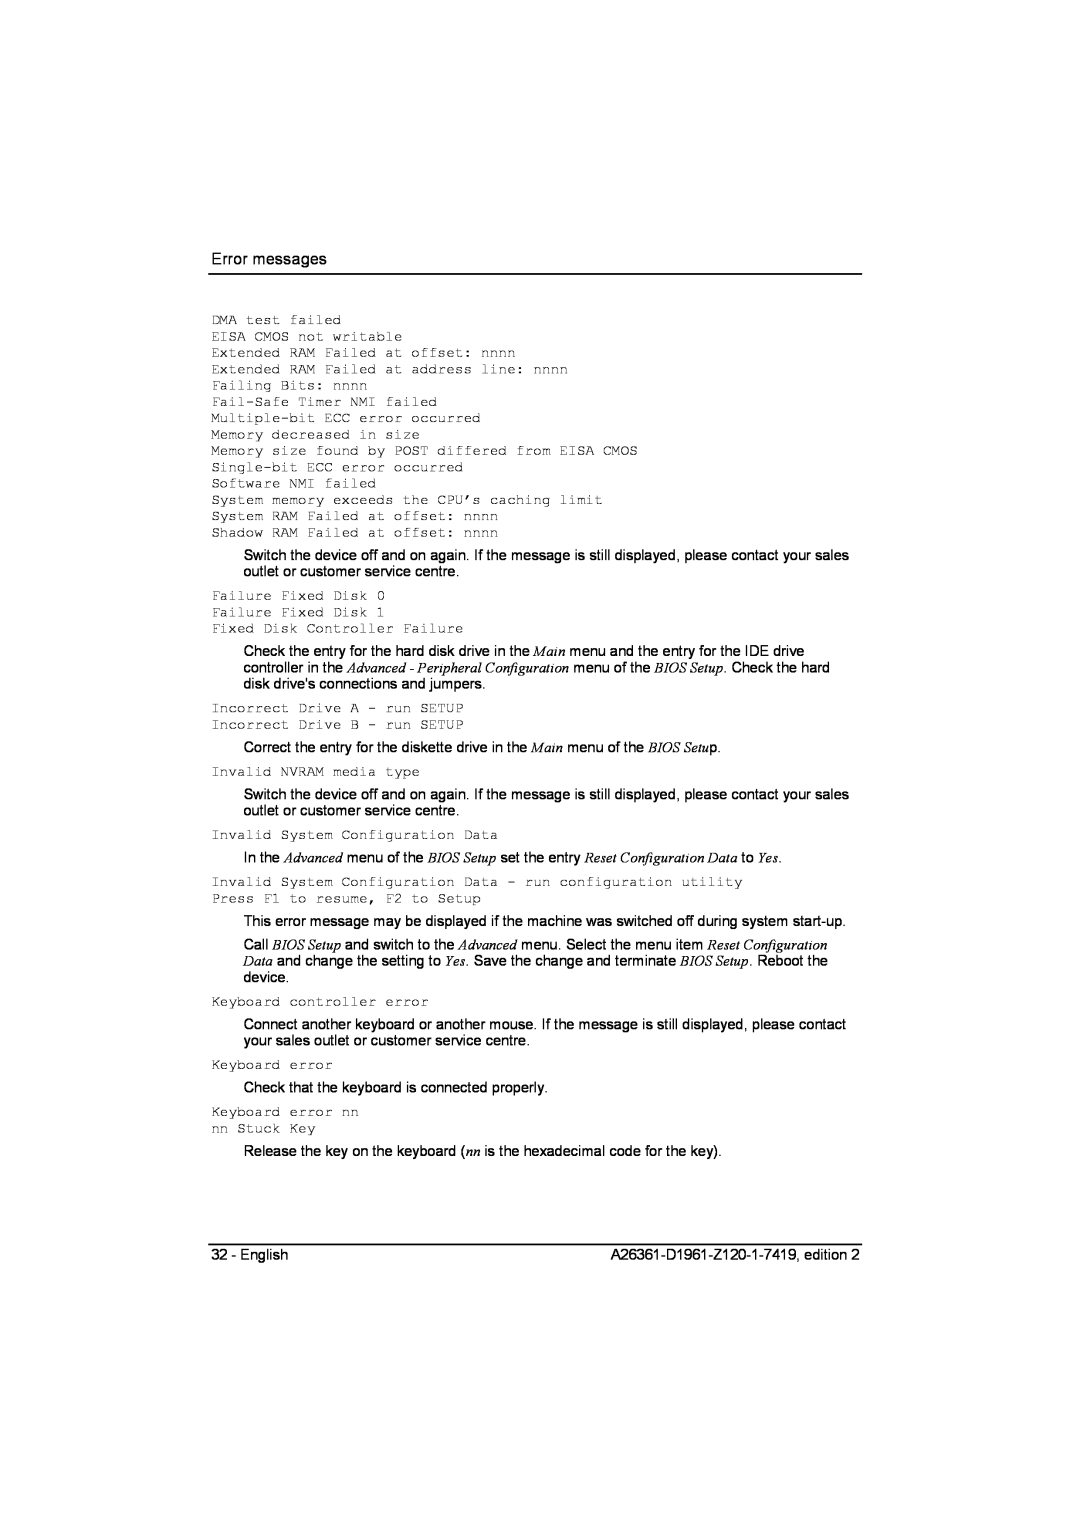 Fujitsu D1961 technical manual Error messages 